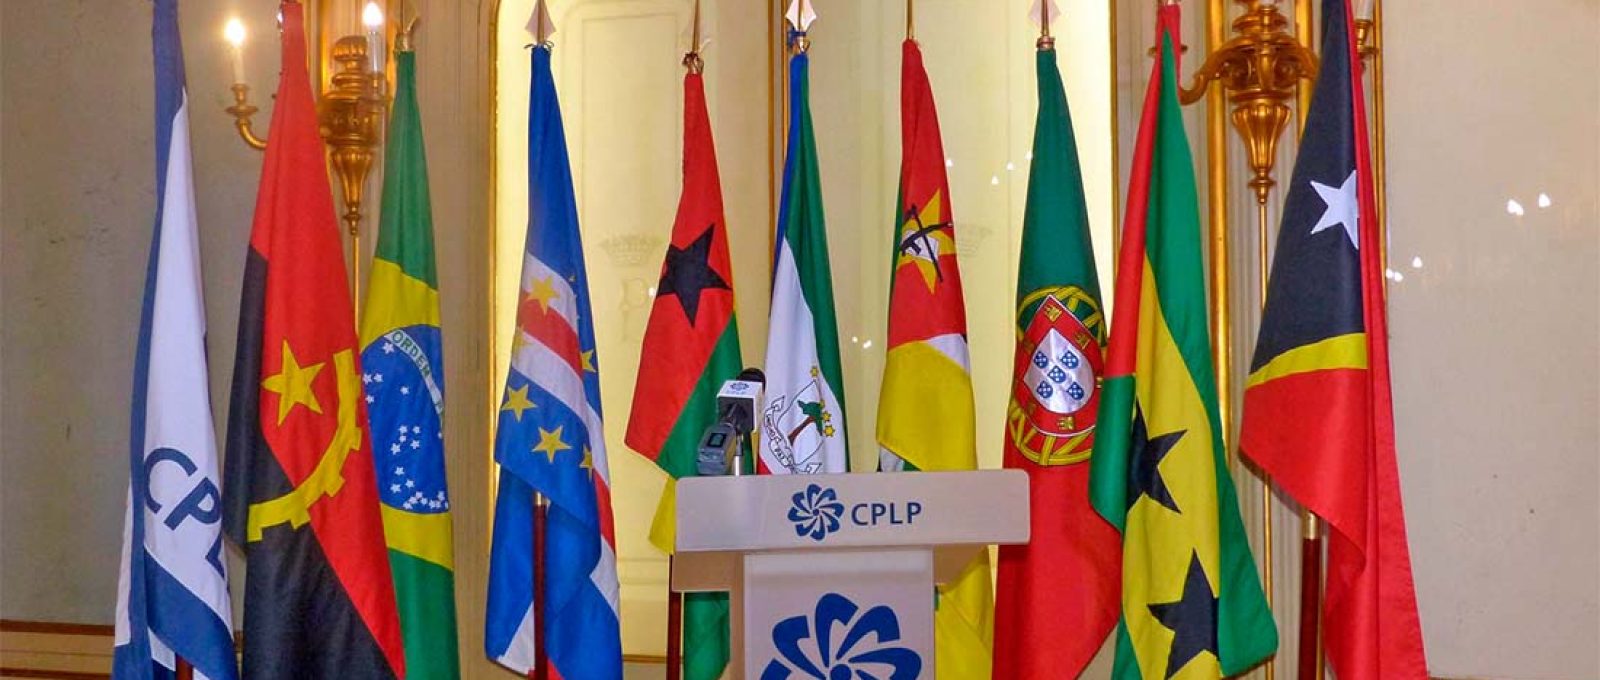 Bandeiras dos Estados-membros da CPLP (João Carlos/DW).